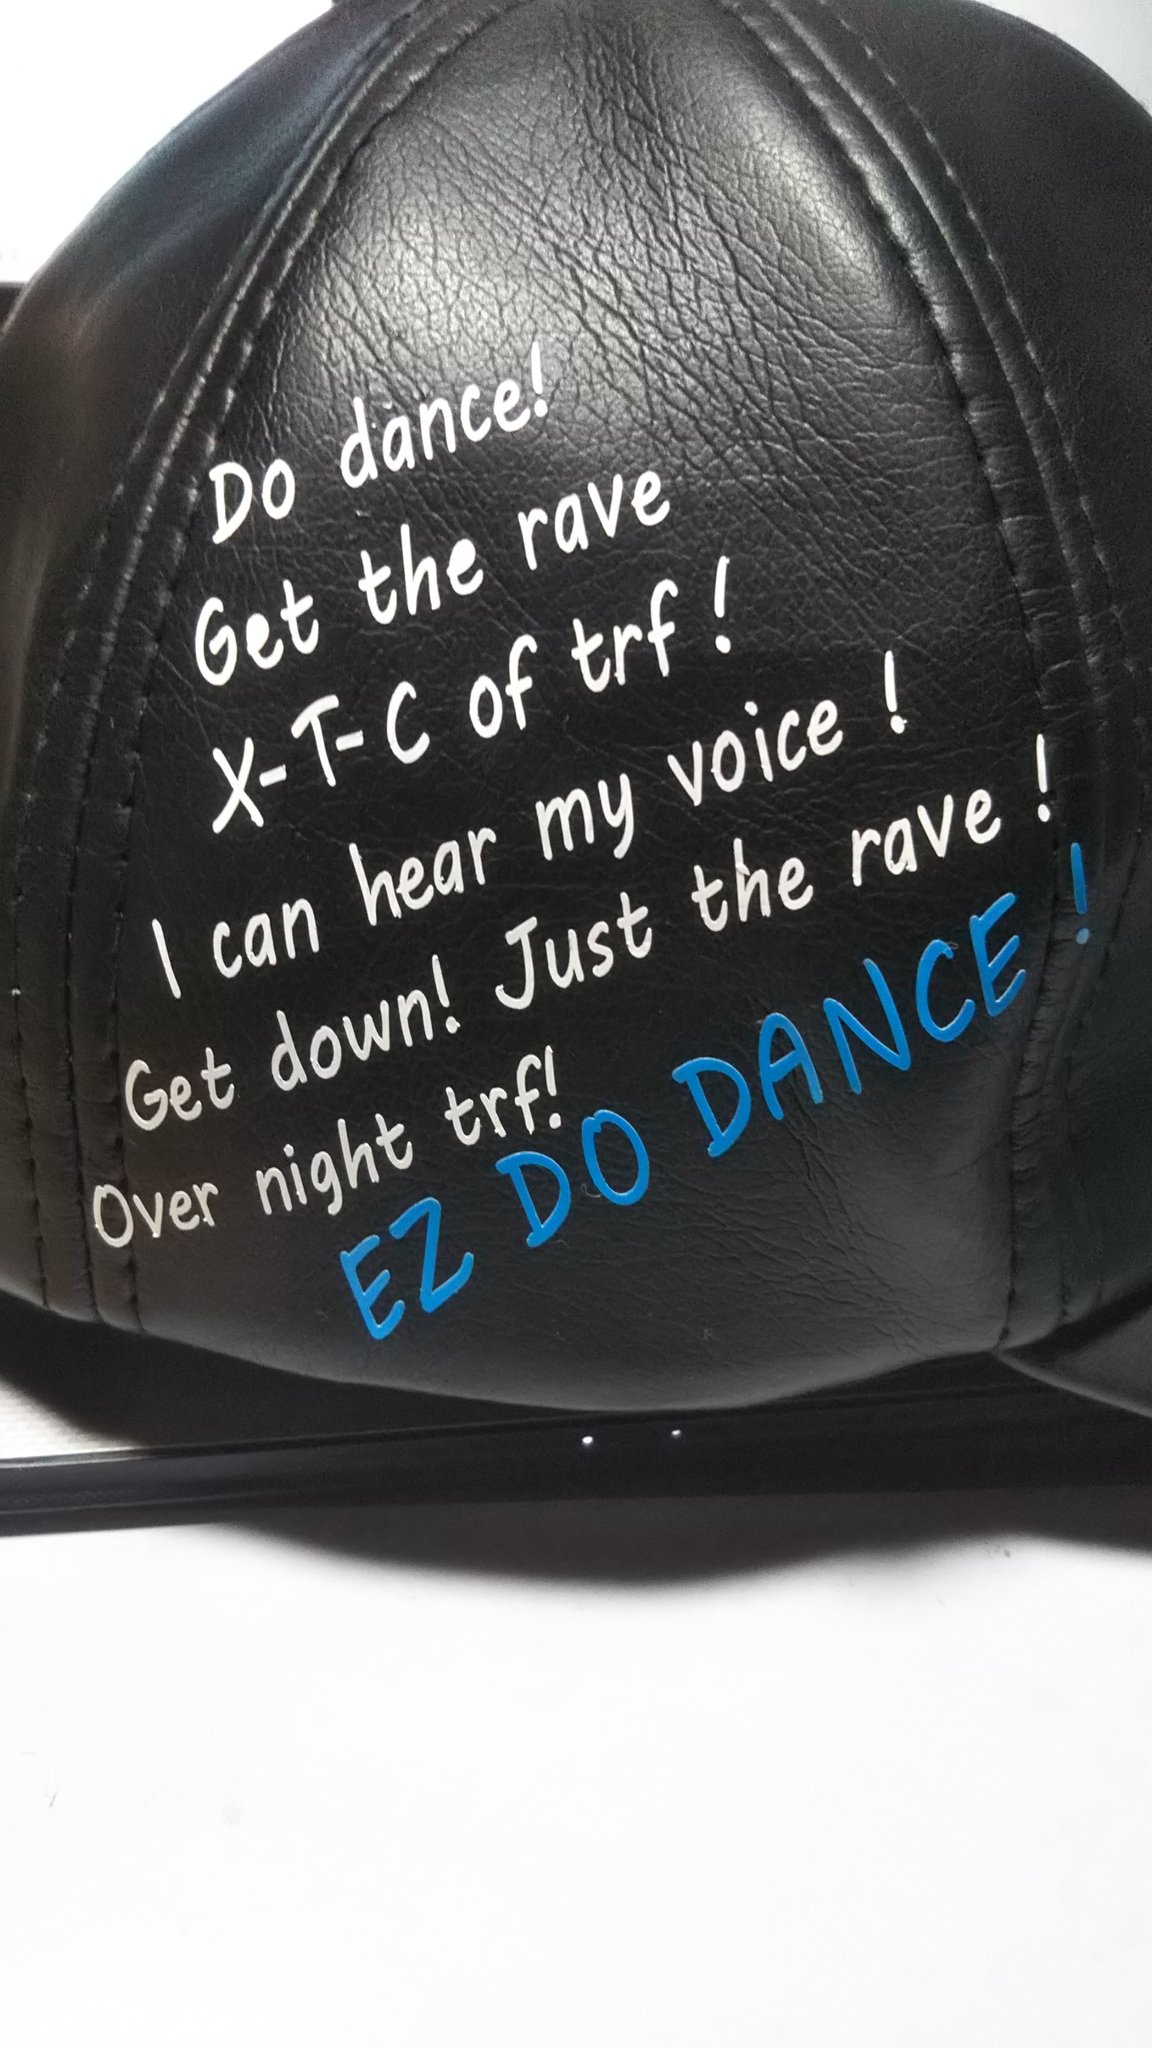 粉ポカリ 増量中 13 仮装で帽子作ったんですが 一番のこだわった所は側面が寂しいのでez Do Dance のイントロのkooさんのラップの部分の歌詞をカッティングシートで貼った所です